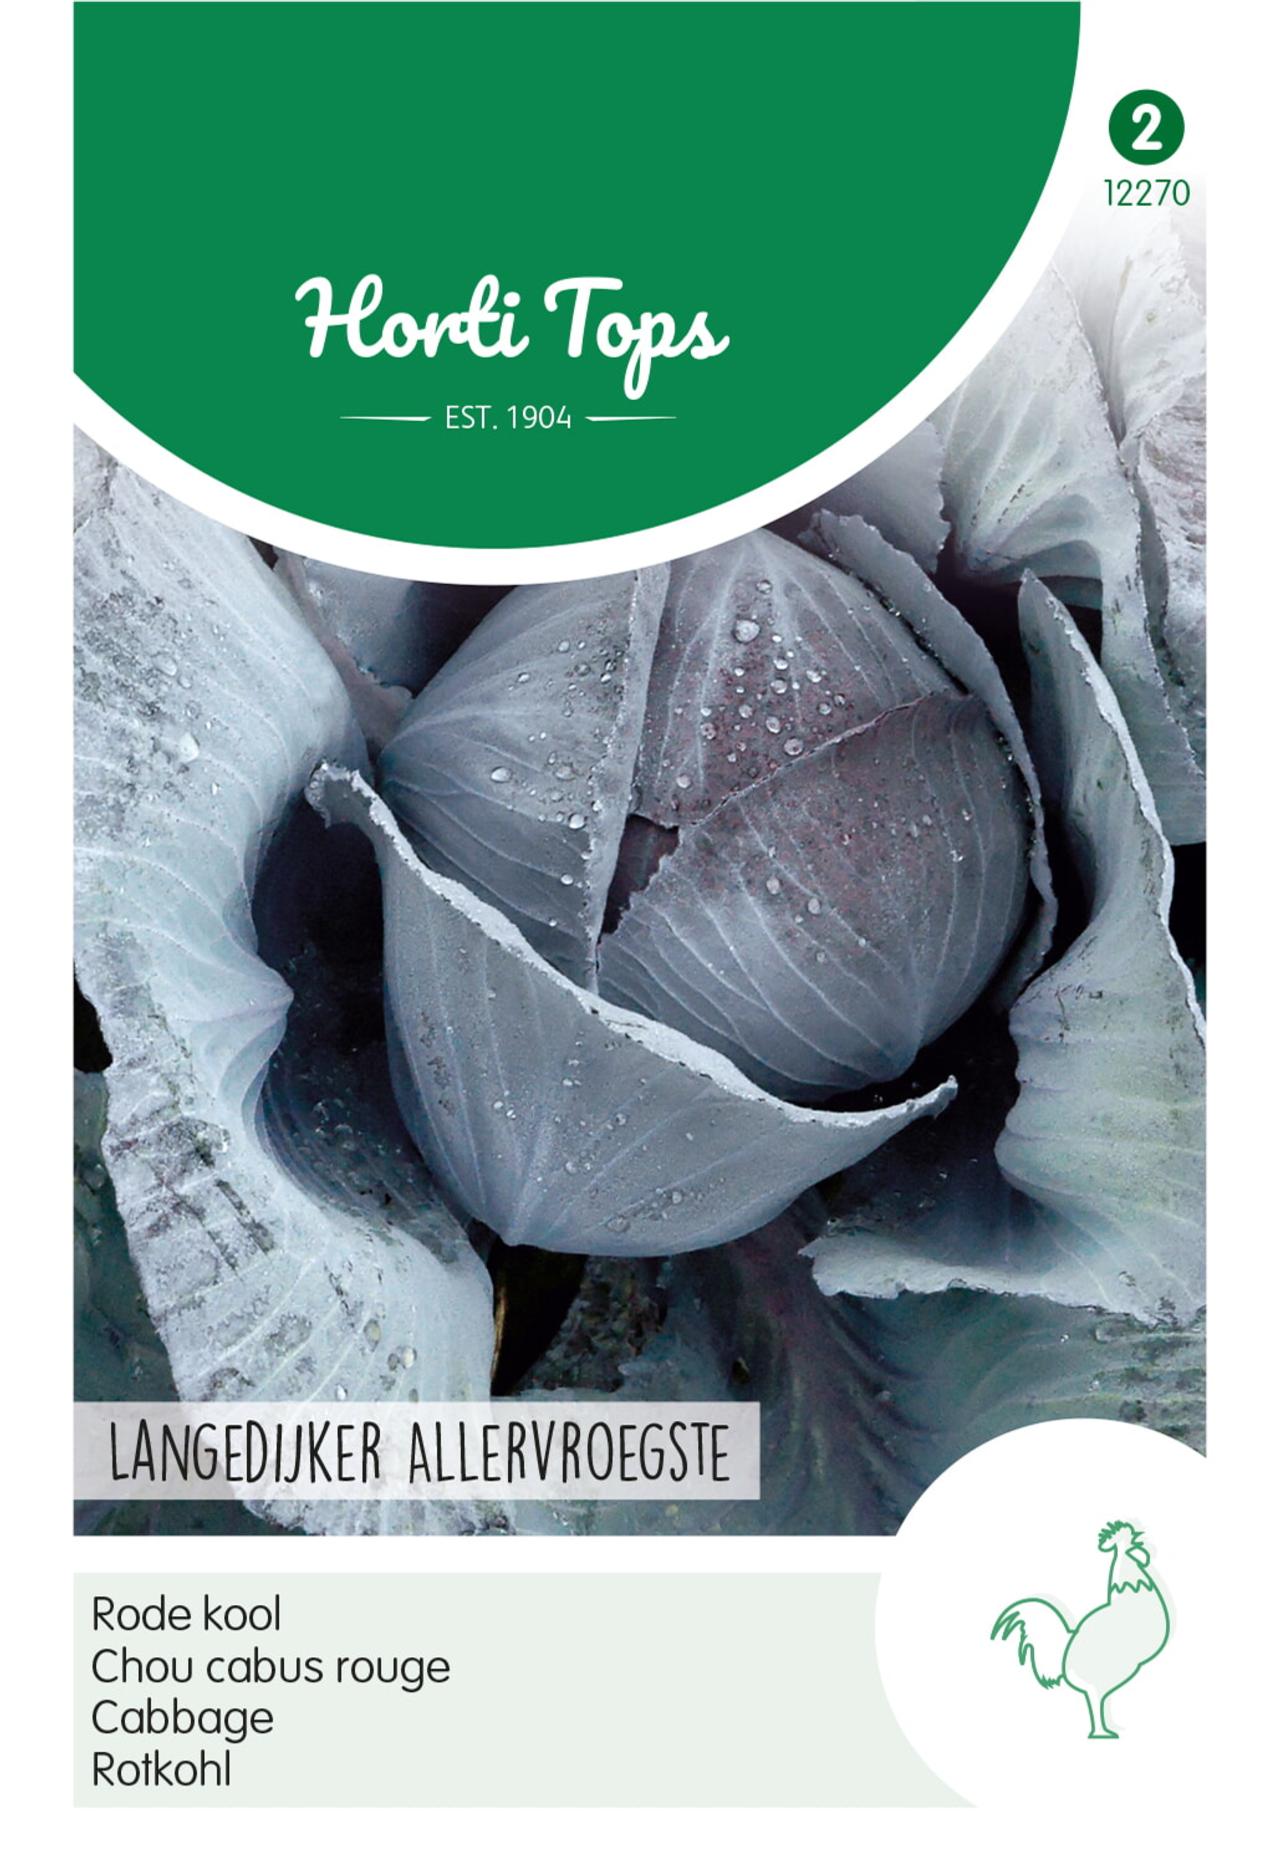 Brassica oleracea 'Langedijker Allervroegste' plant